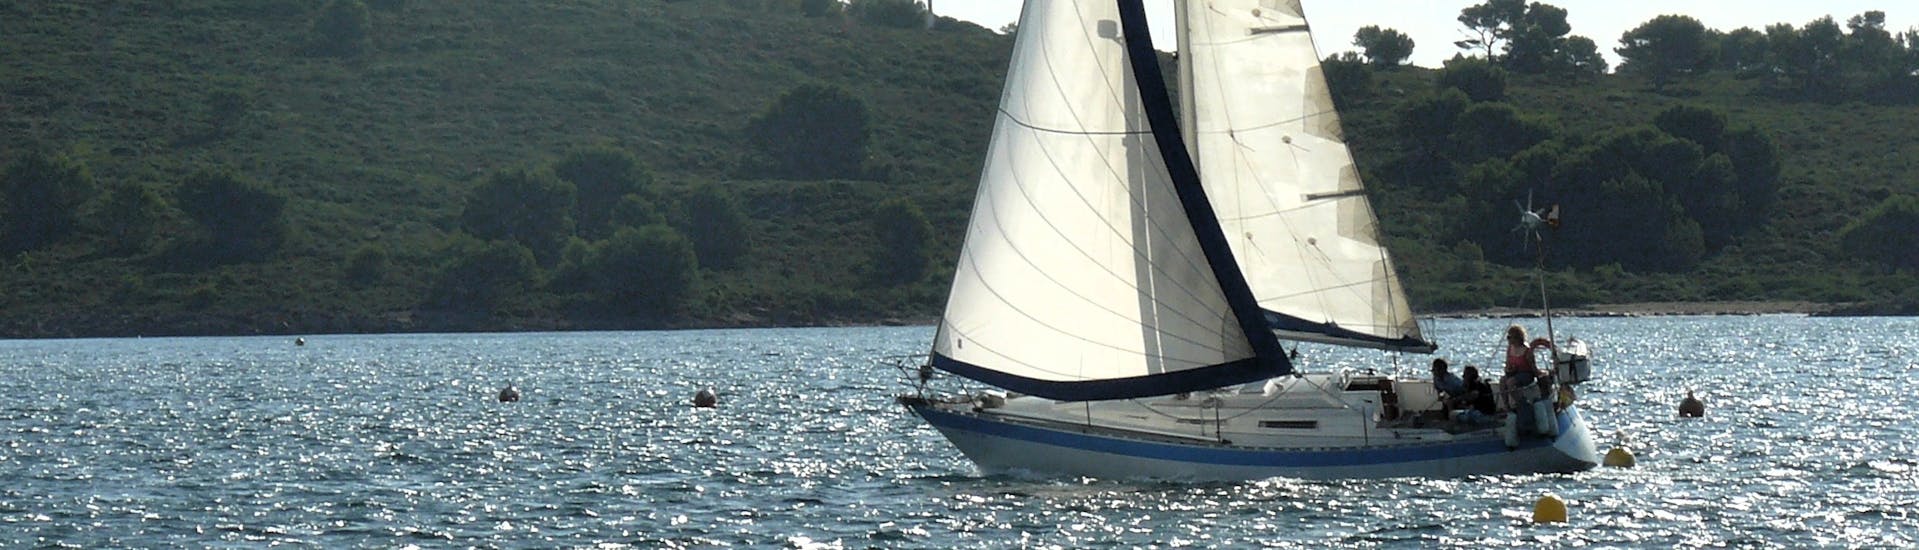 Una delle barche utilizzate da Katayak Menorca durante una gita in barca a vela da Fornells lungo la costa nord di Minorca con Open Bar.